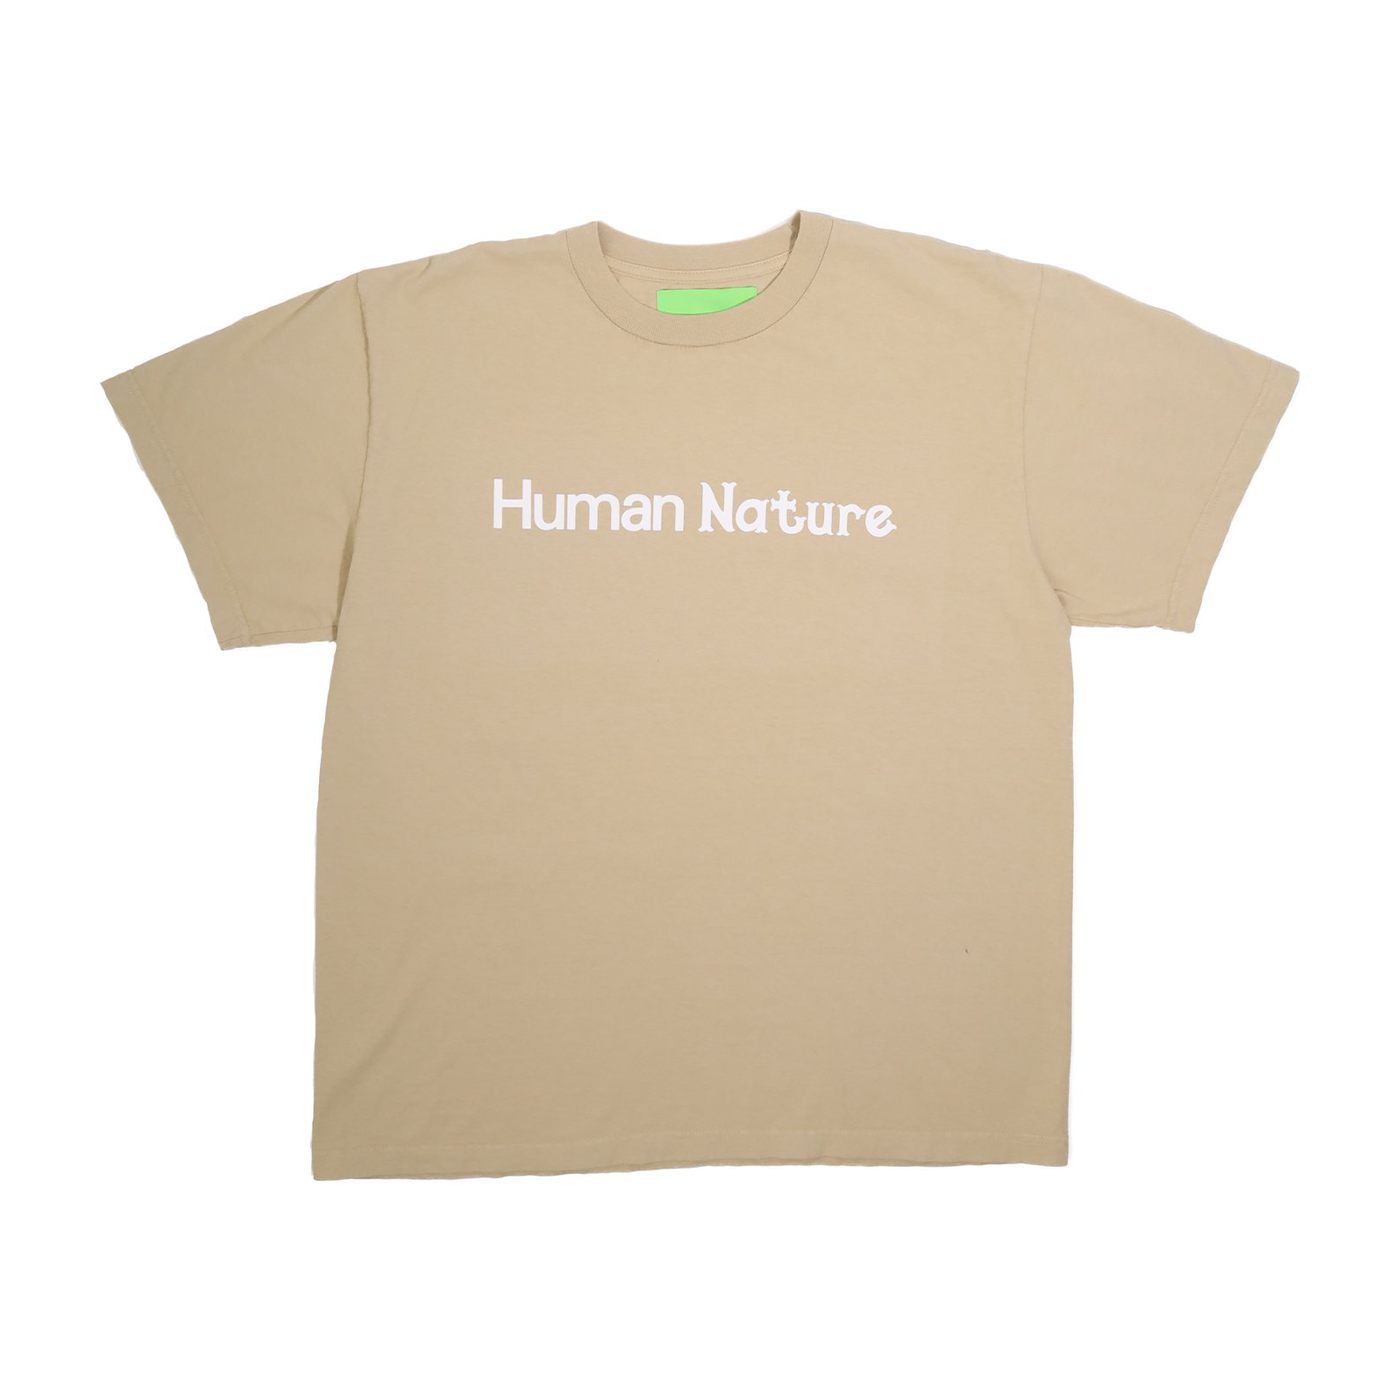 Human Nature T-Shirt